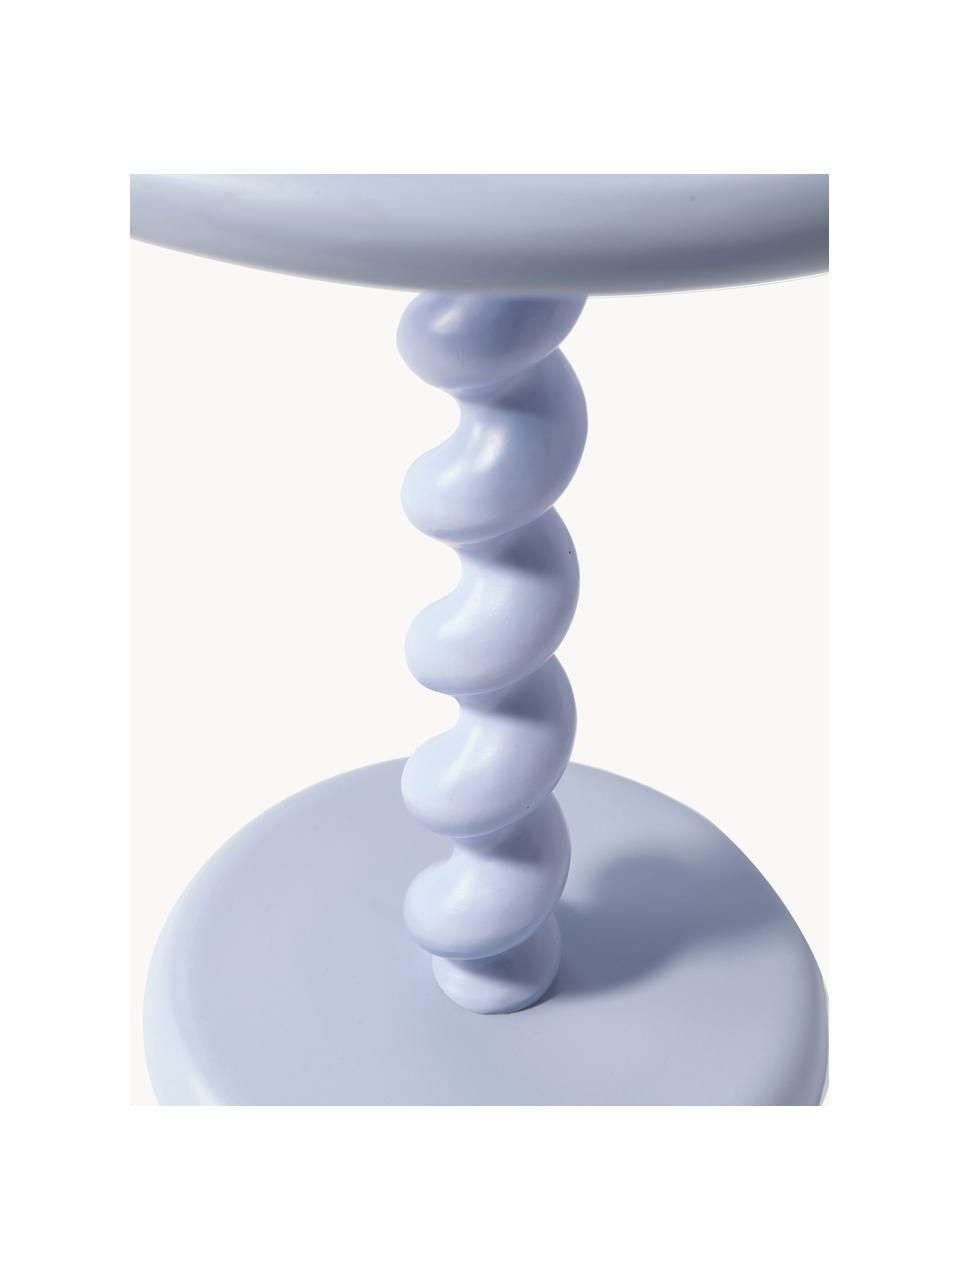 Kulatý odkládací stolek Twister, Hliník s práškovým nástřikem, Levandulová, Ø 46 cm, V 56 cm